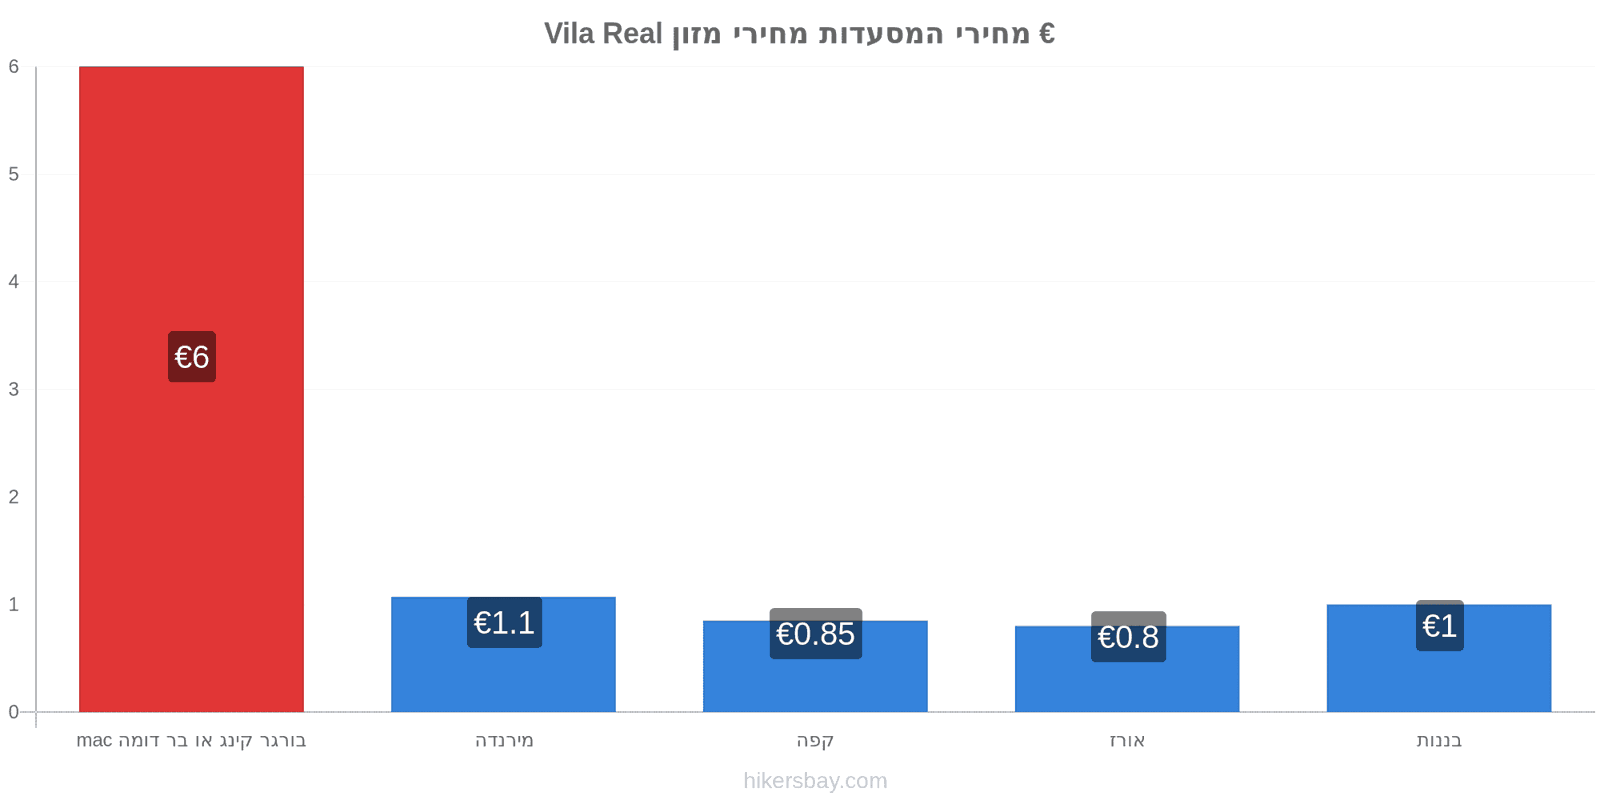 Vila Real שינויי מחיר hikersbay.com